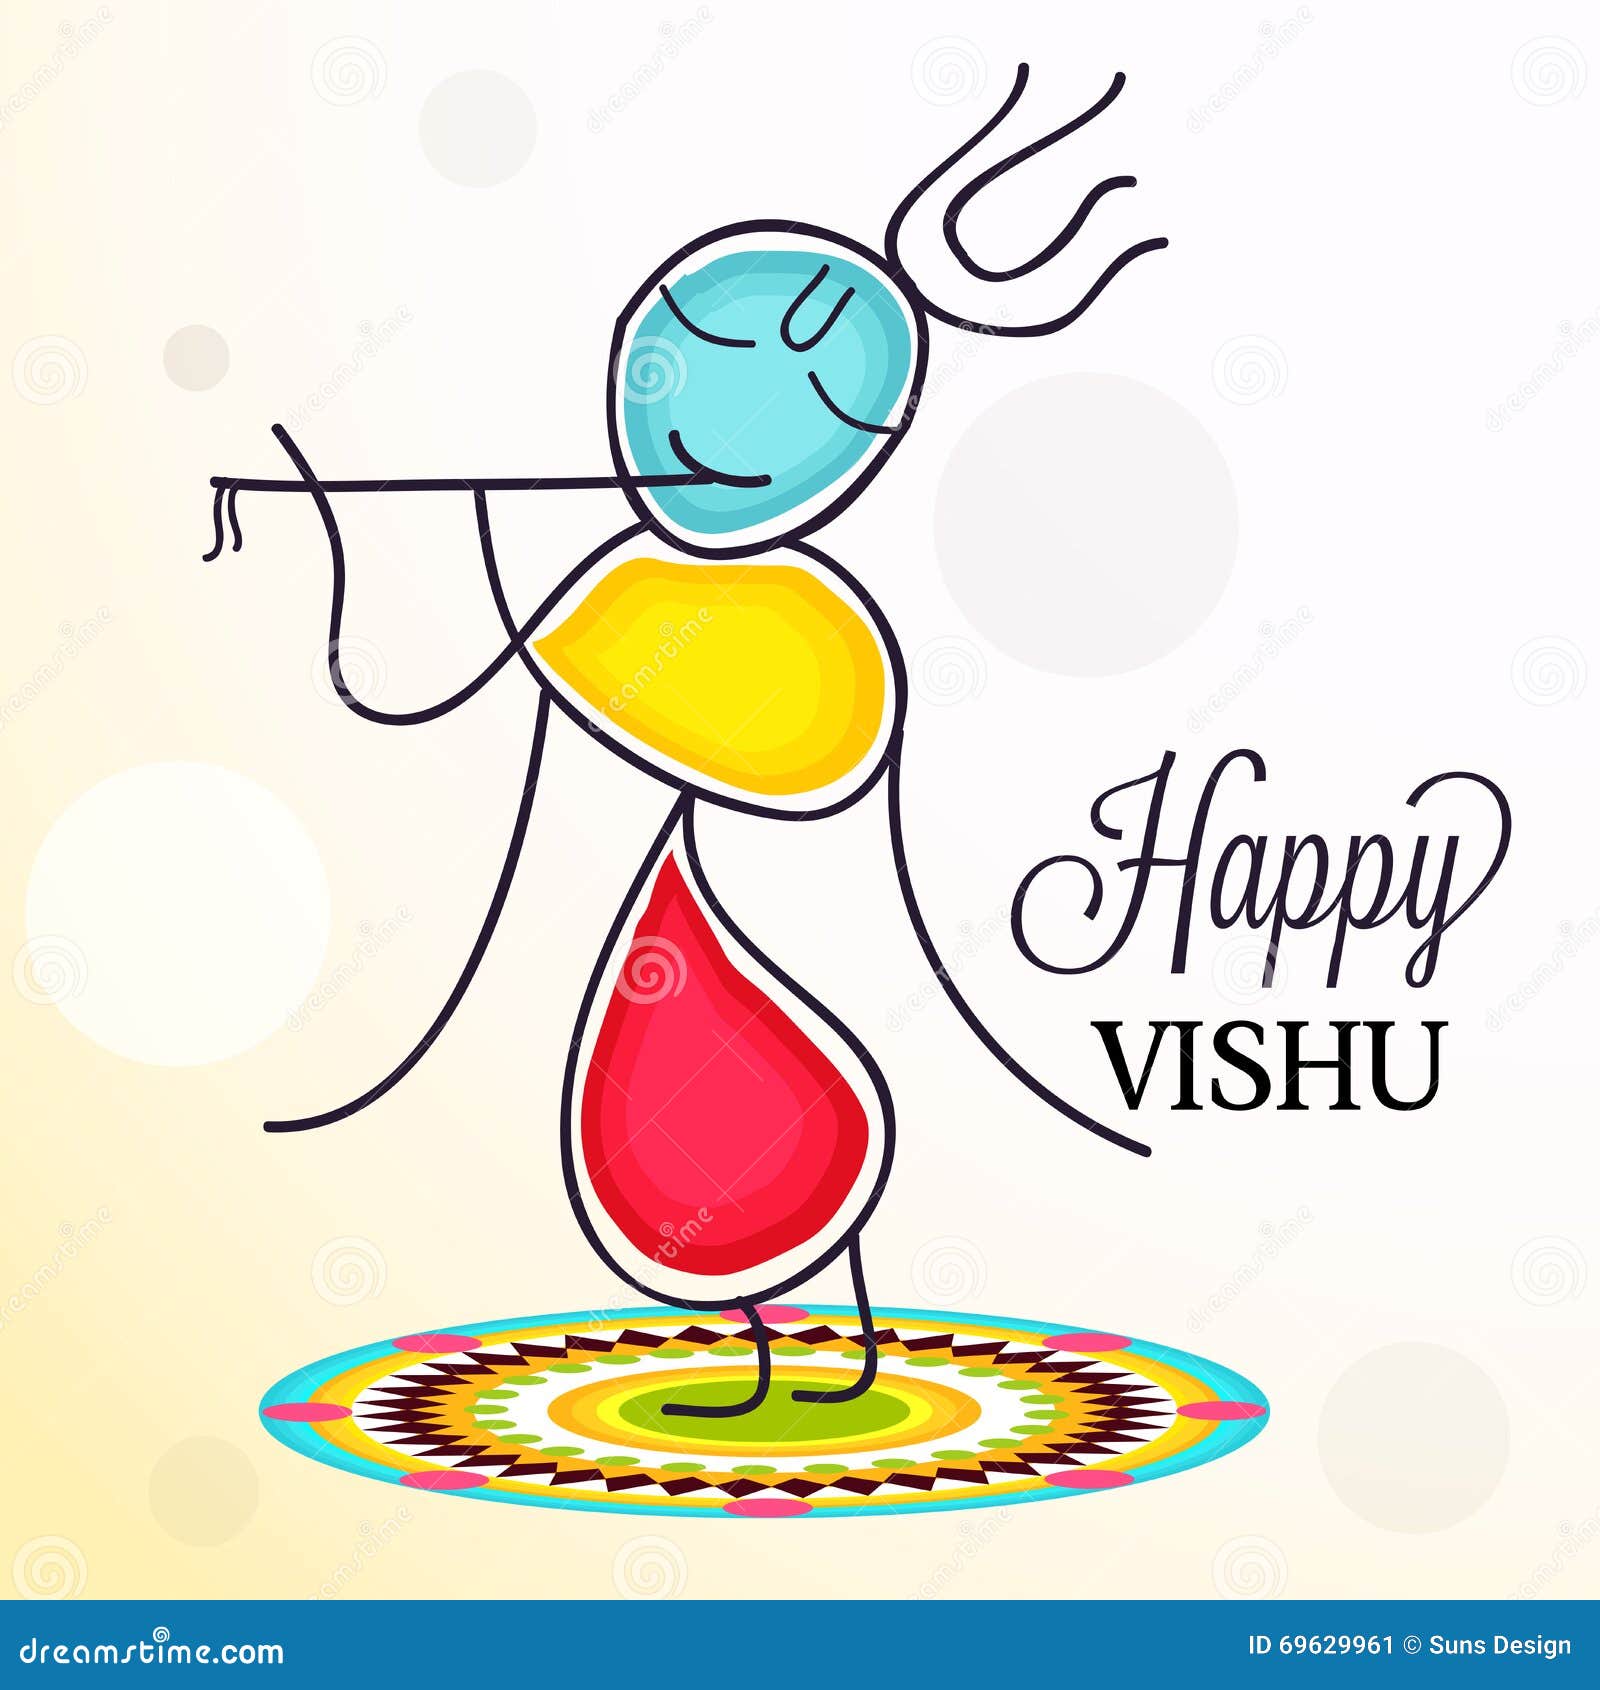 Happy Vishu stock illustration. Illustration of summer - 69629961